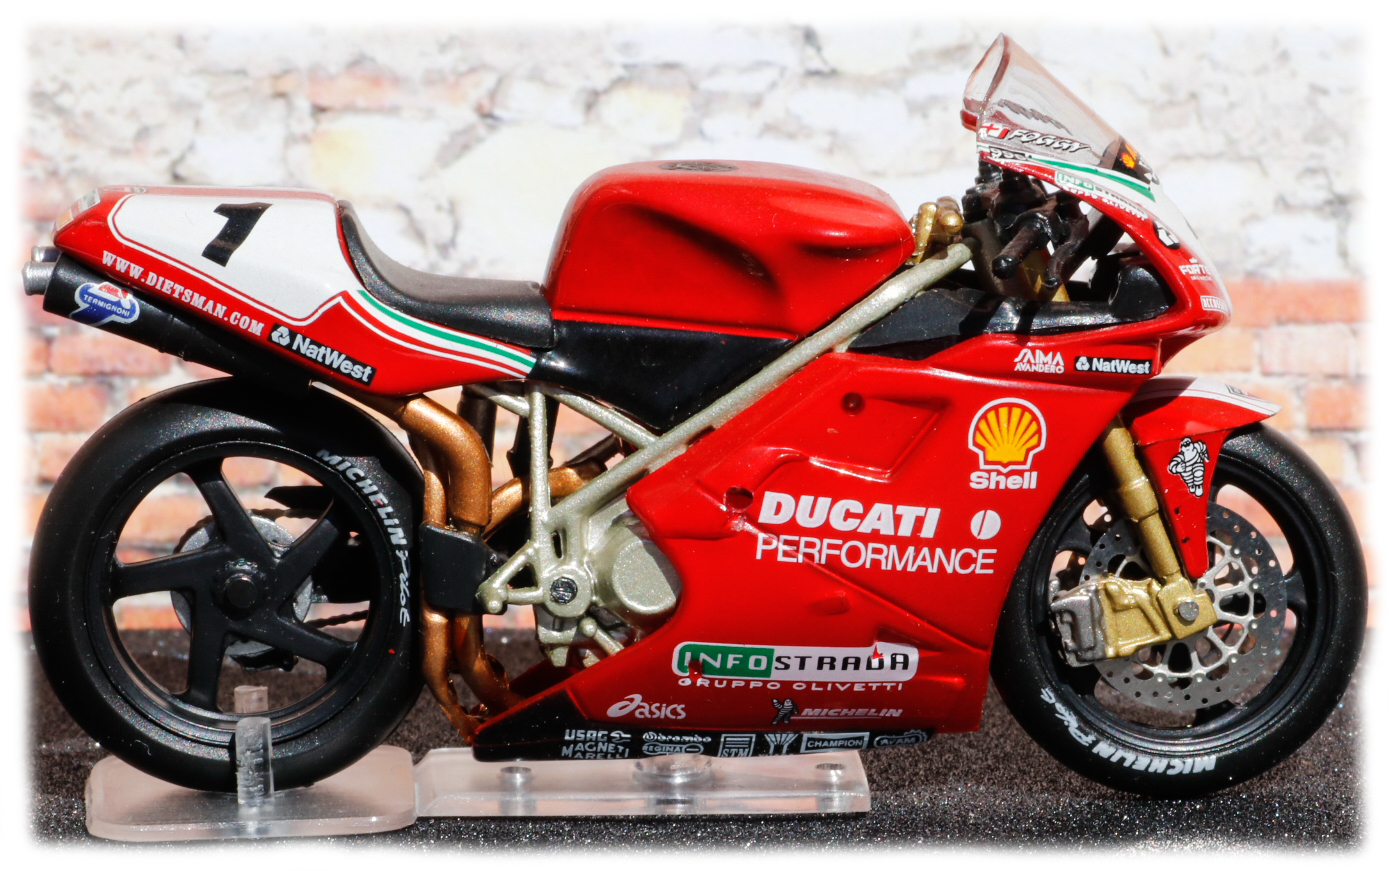 IXO Ducati 996 SB Carl Fogarty